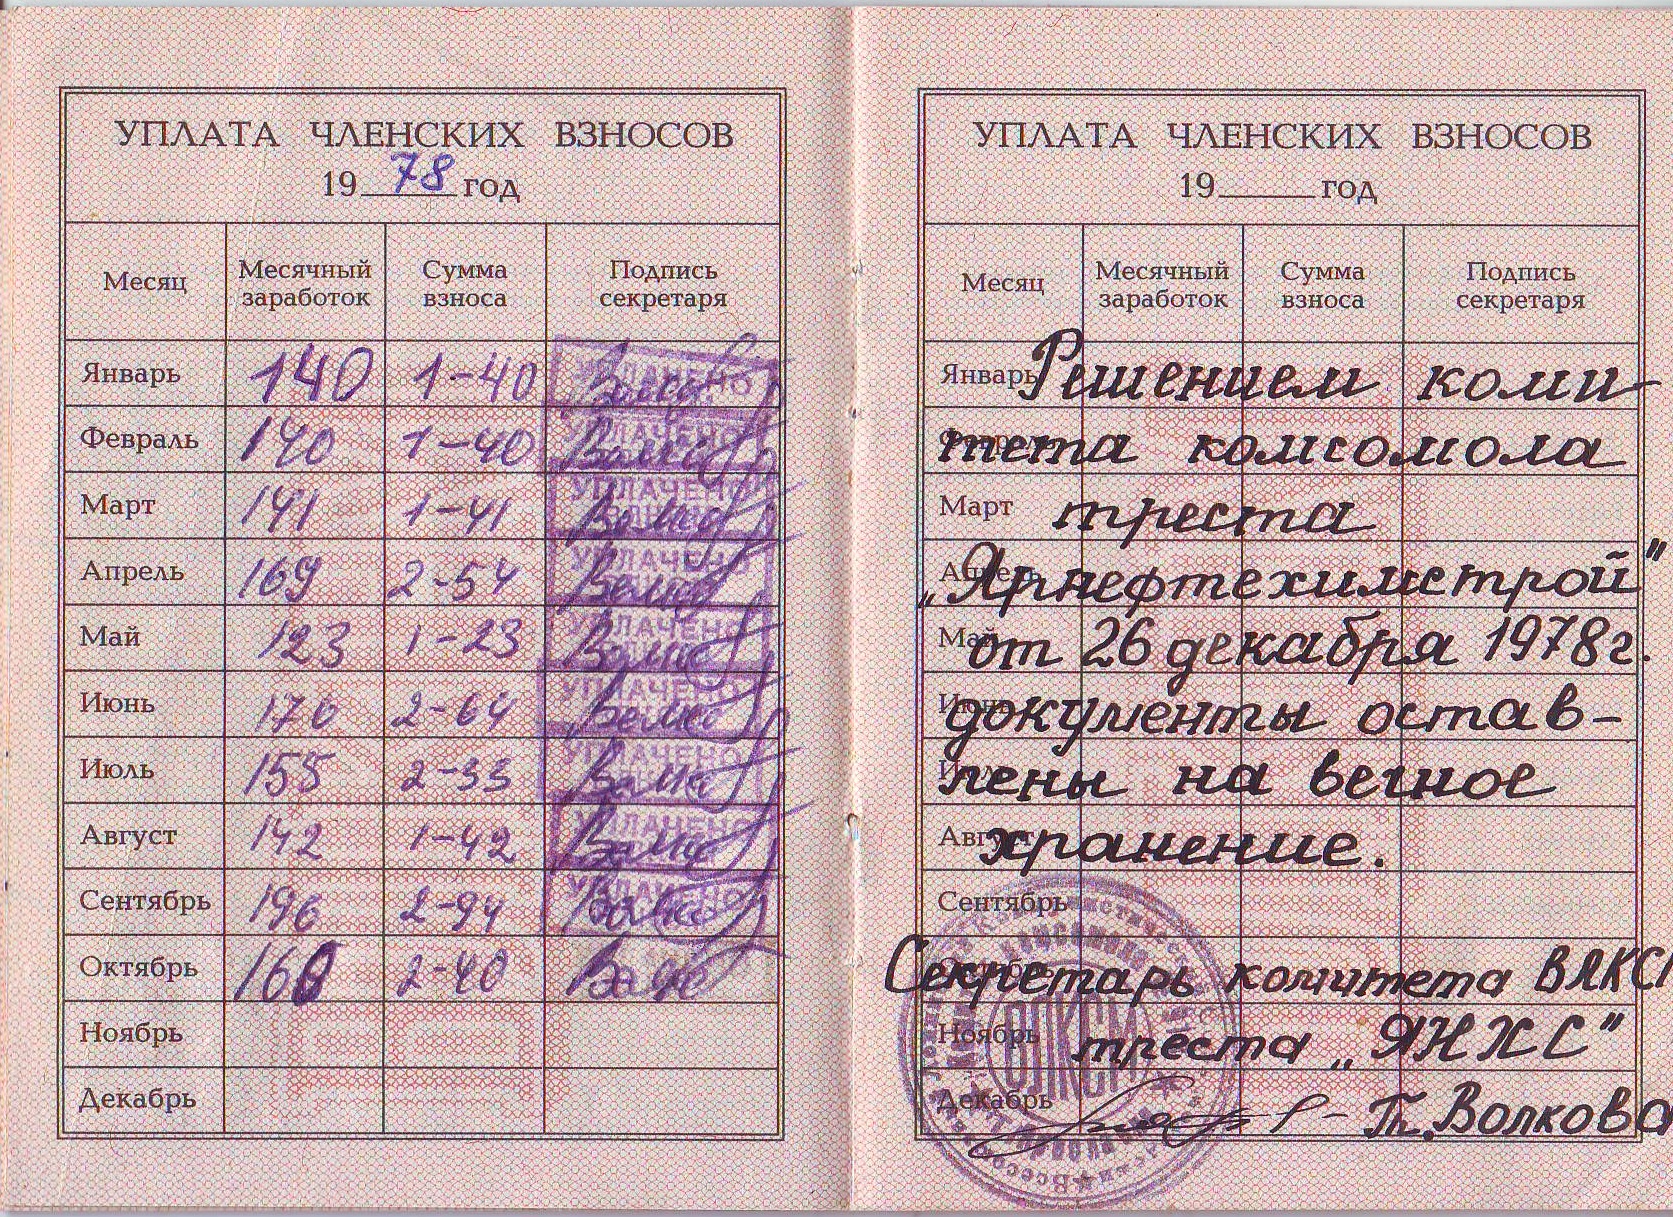 Комсомольский билет-2